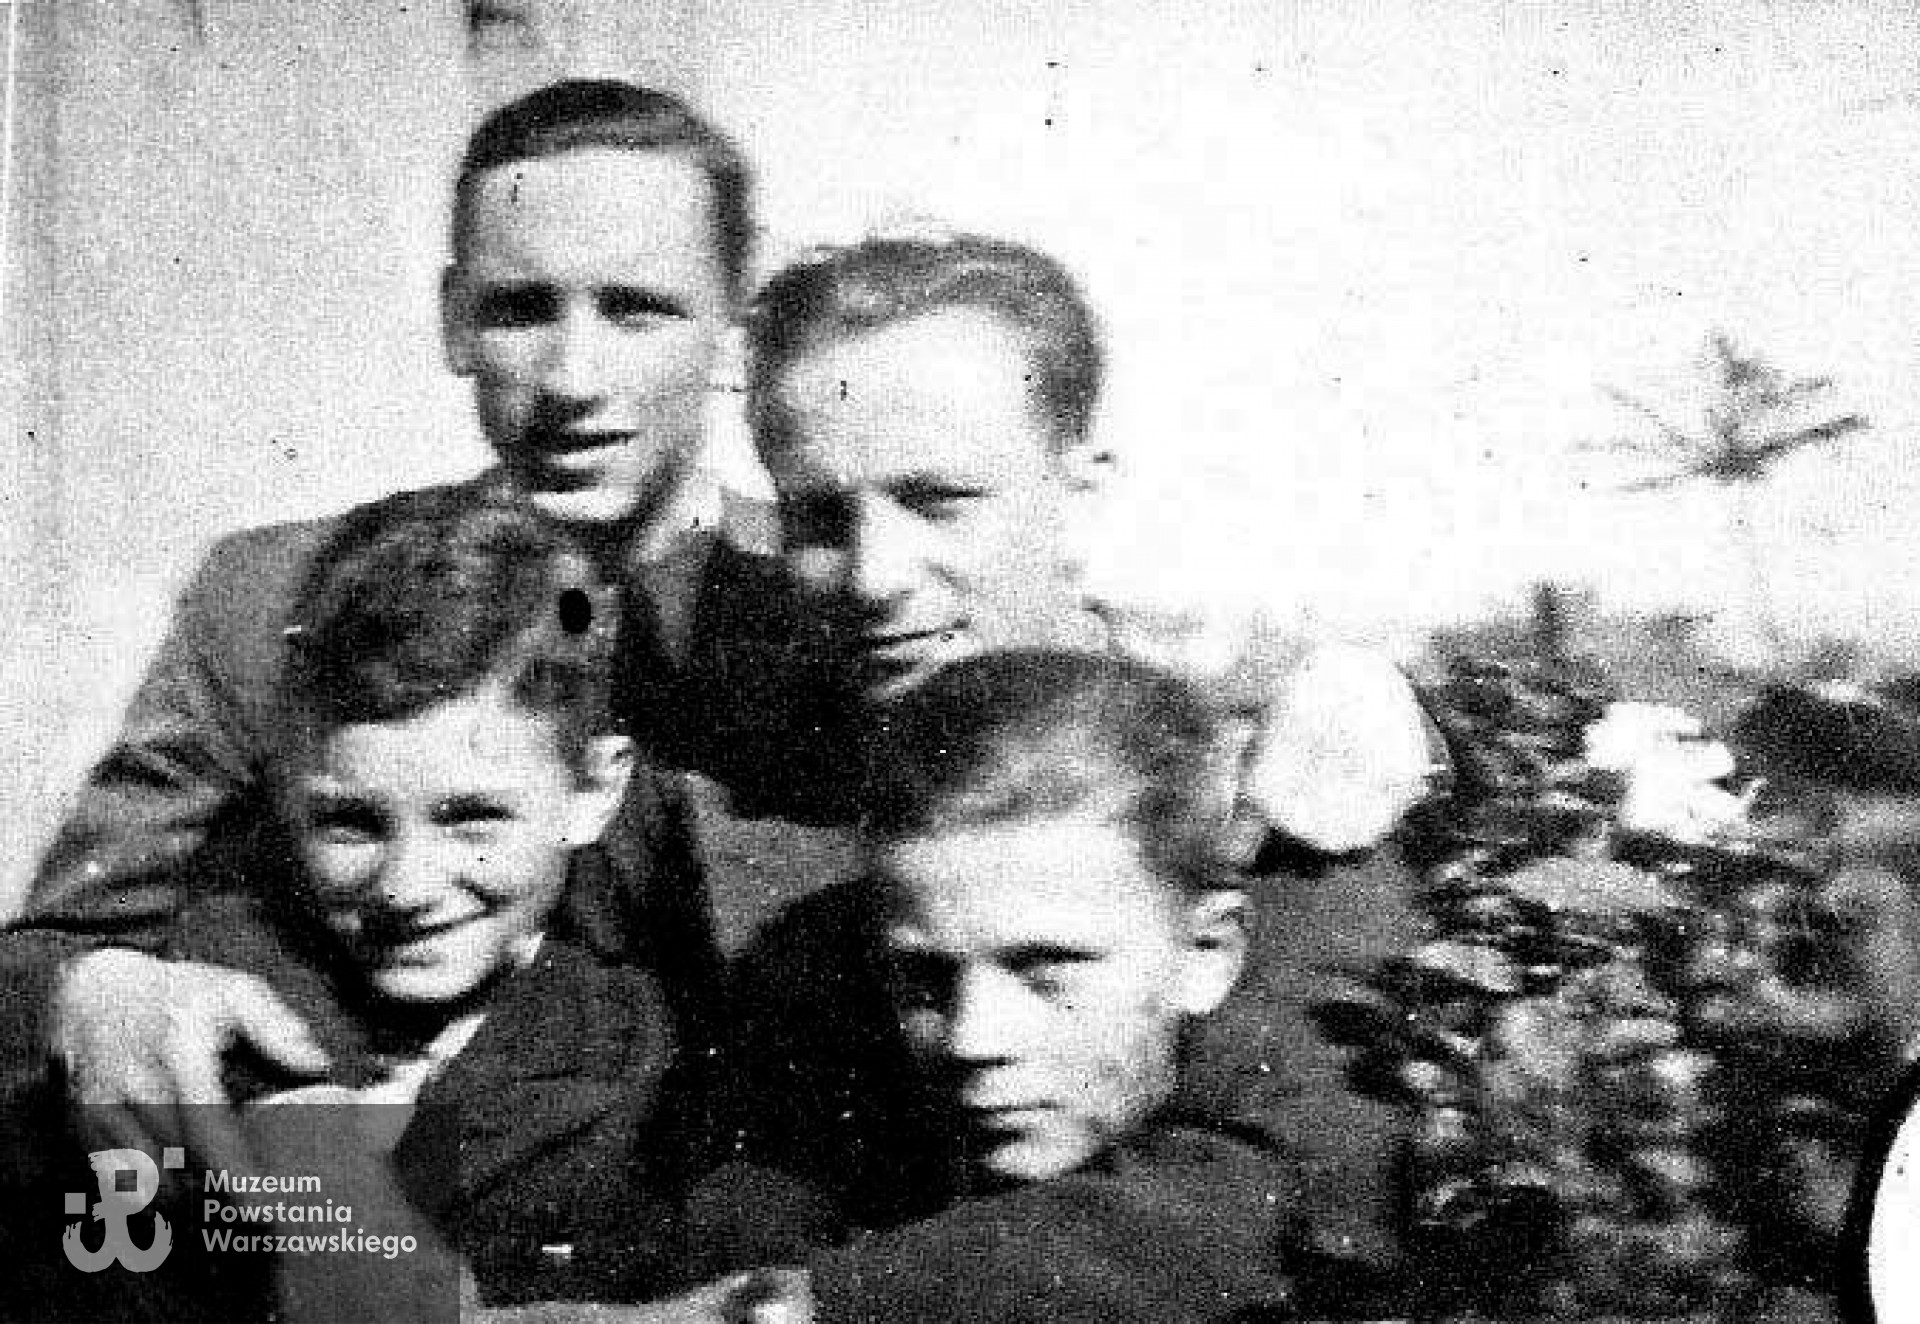 Wiosna 1943. Od lewej: Andrzej Hryniewicz "Tarzan" (poległ 21.08.1944)  z bratem Bohdanem Hryniewicz "Bohdan", za nimi stoją -   z lewej: Zygmunt Rymszewicz "NN" (pol. 1.08.1944), po prawej i Wiktor Rymszewicz "Kot" (pol. 5.09.1944). Fot. Bohdan Hryniewicz, archiwum rodzinne.